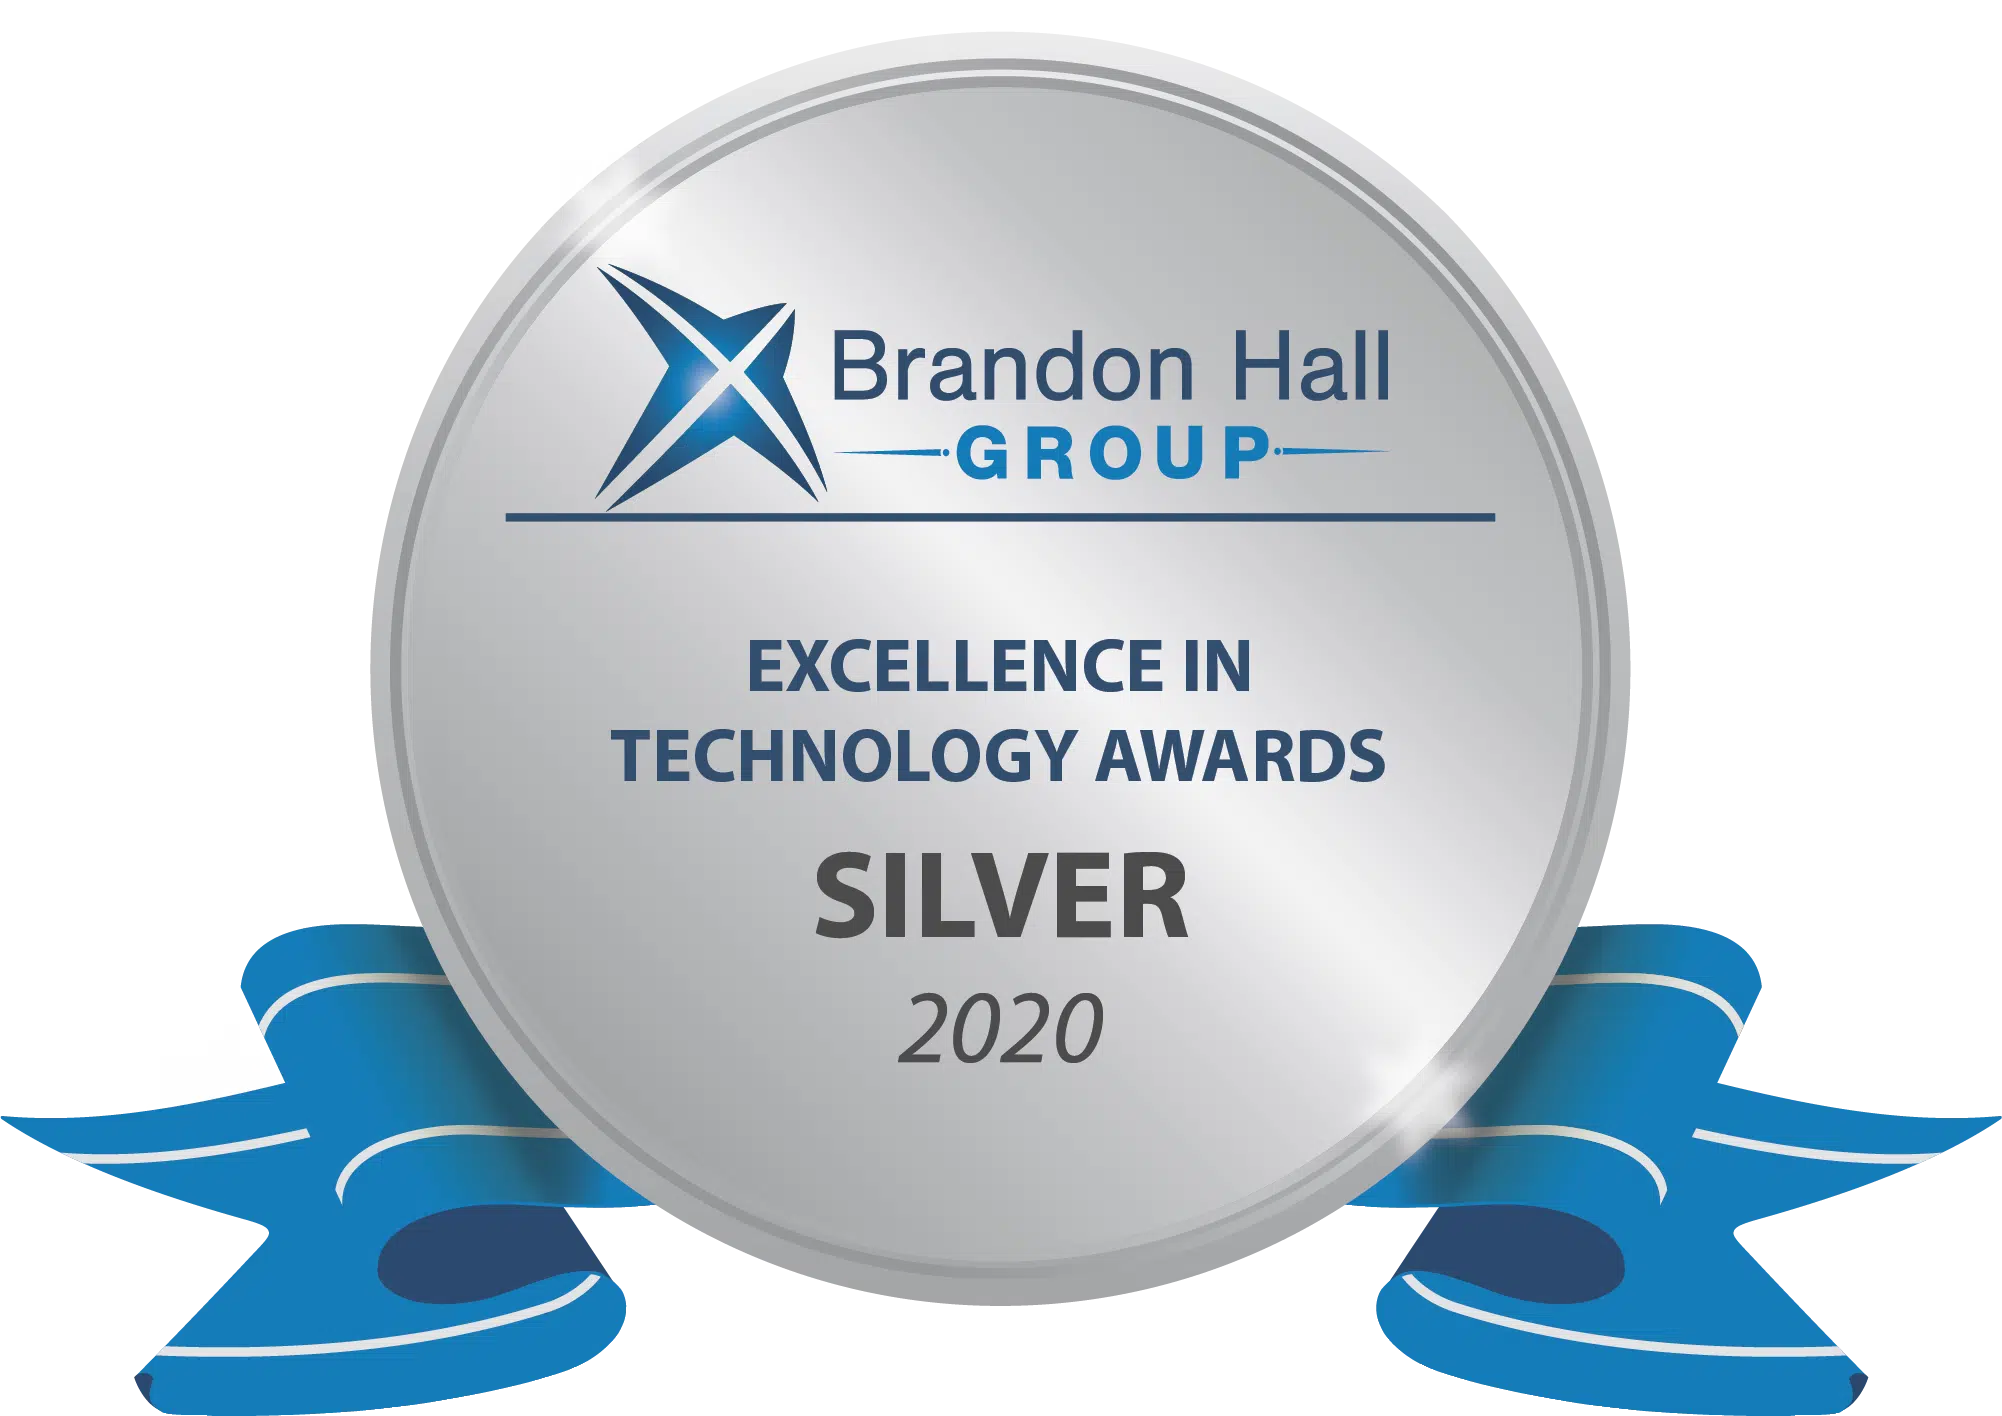 Brandon Hall Excellence Award - Gold